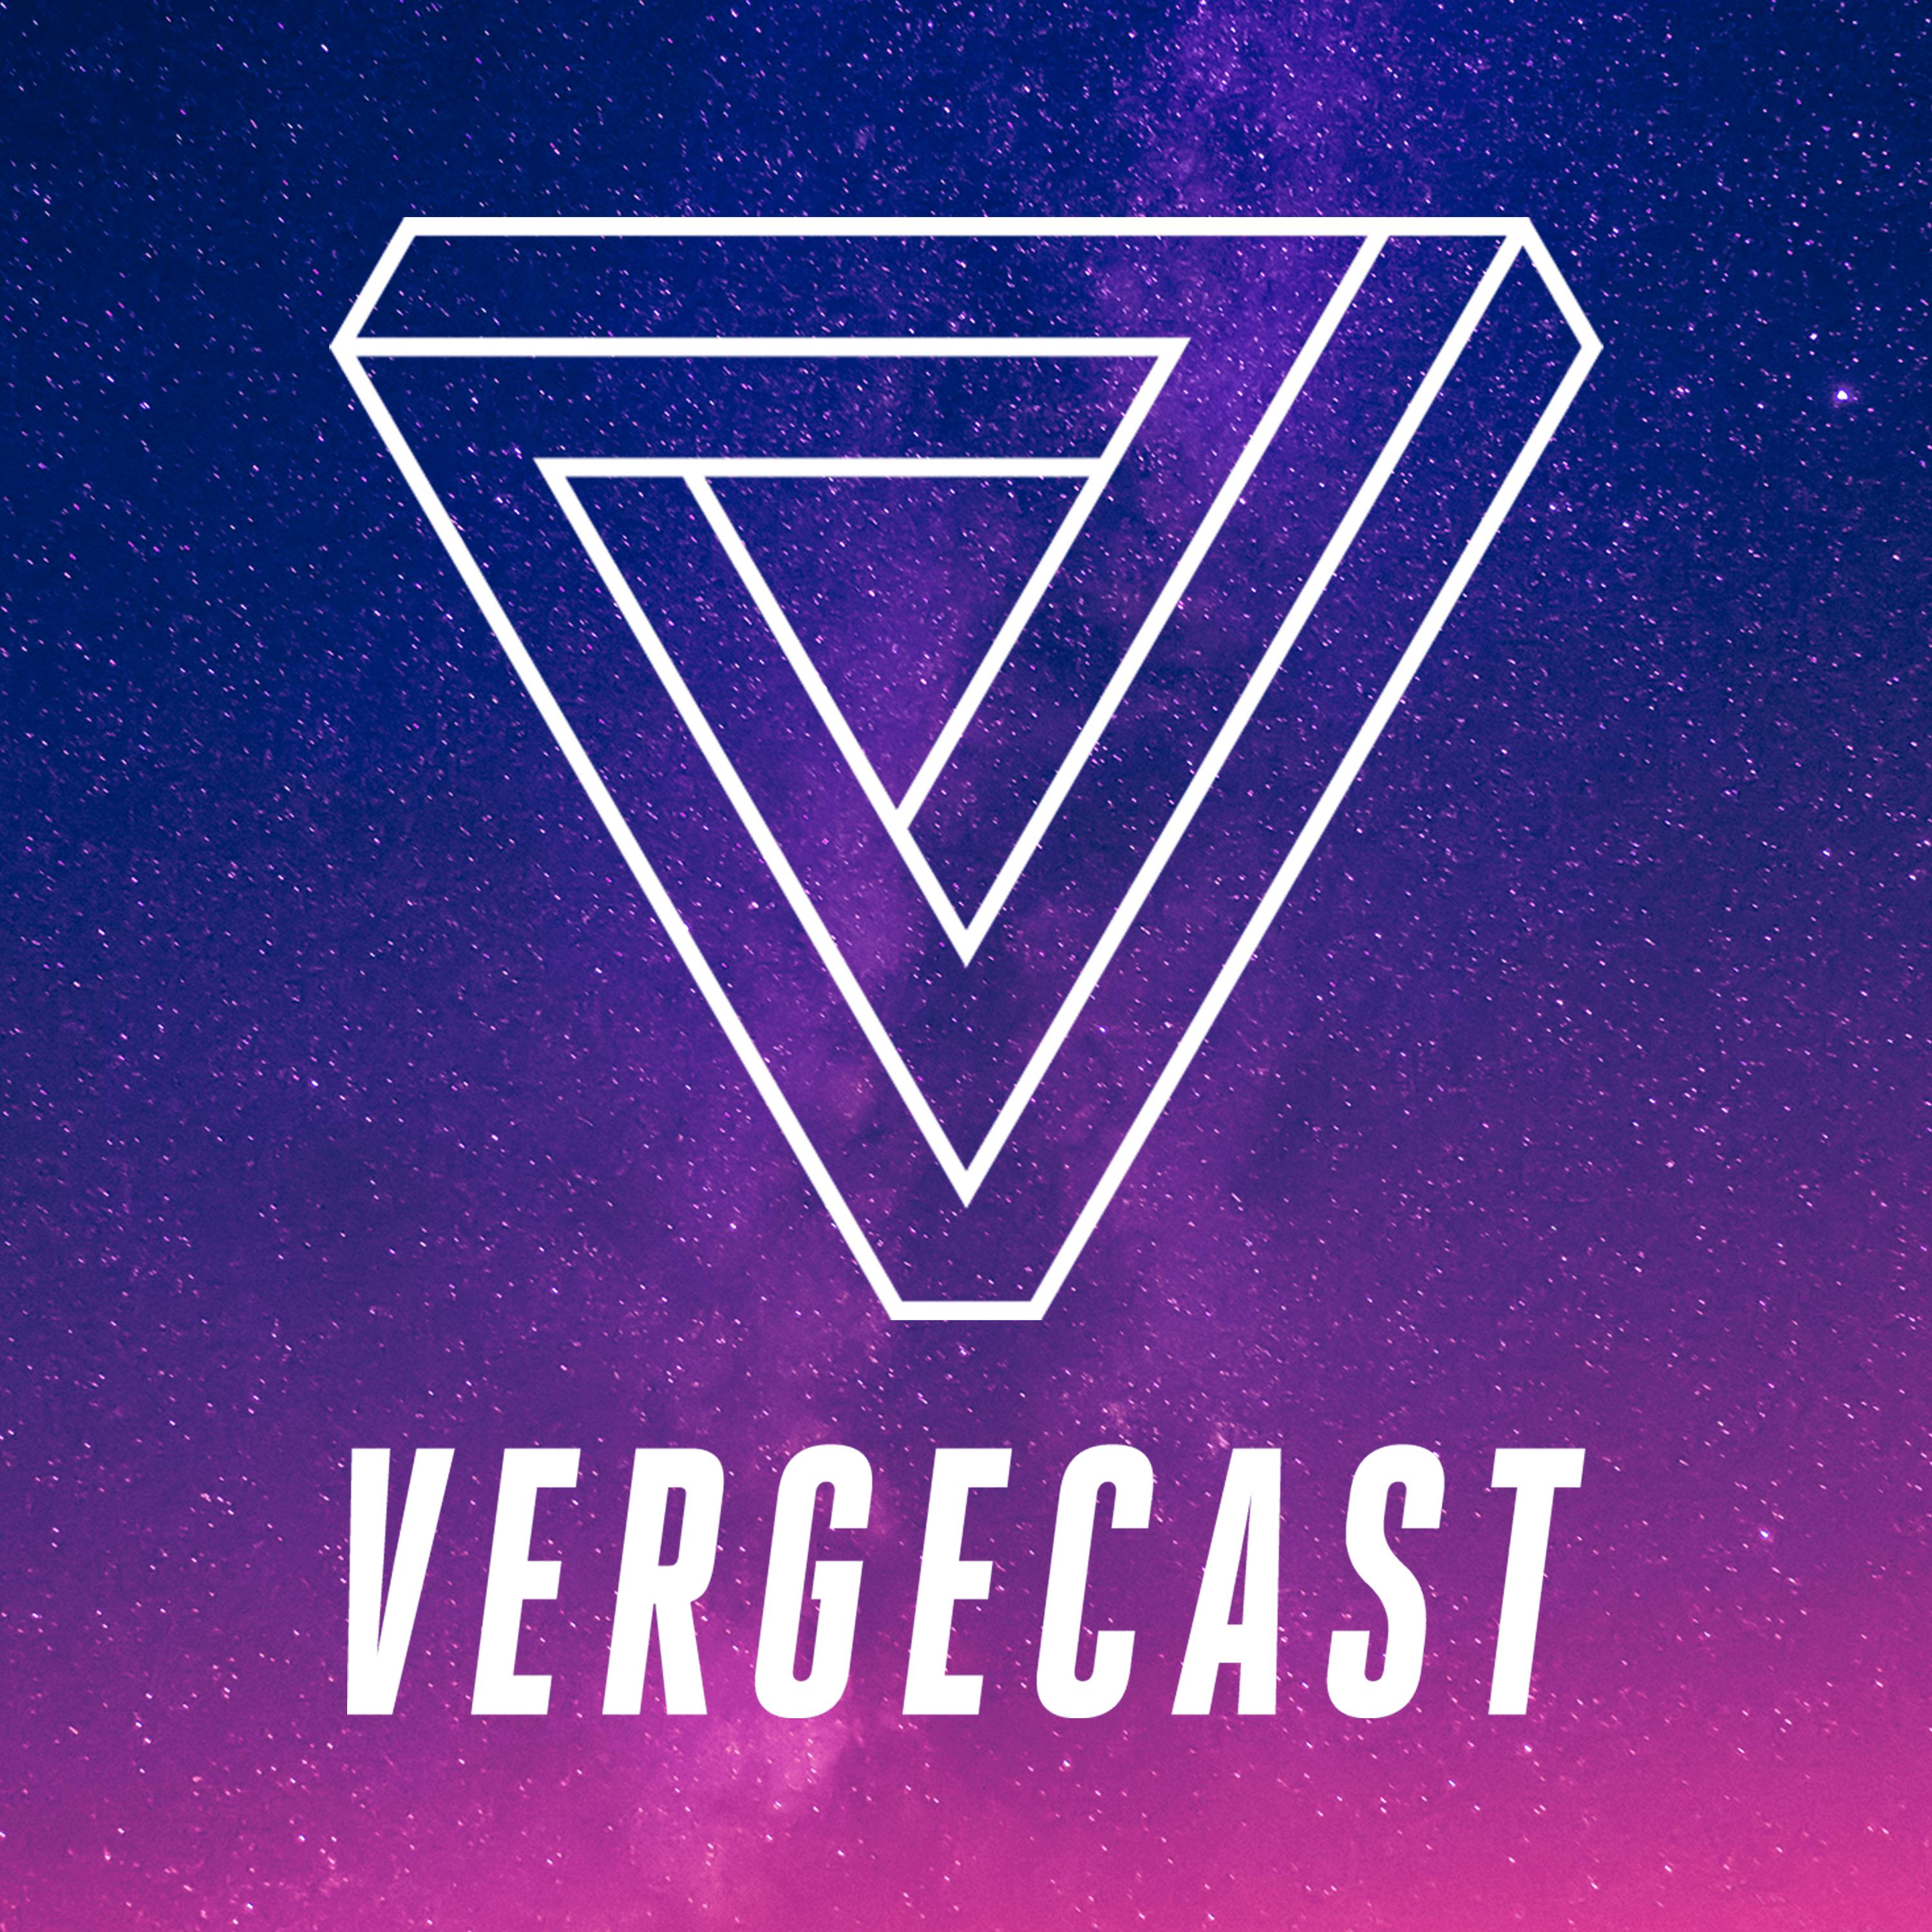 The Vergecast Podcast Addict - caucus roblox script